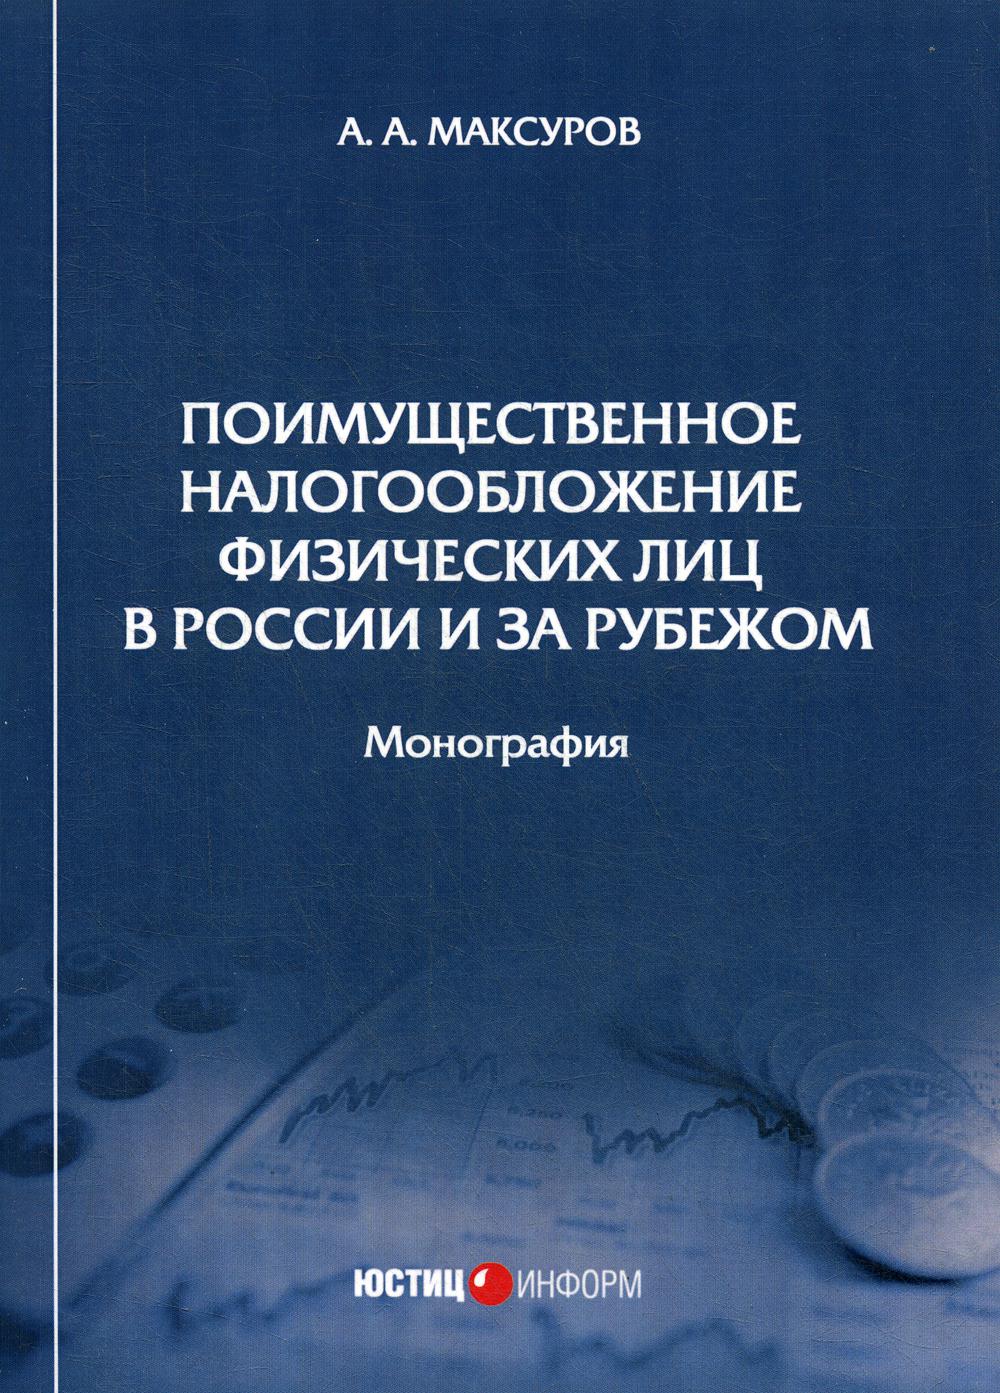 фото Книга поимущественное налогообложение физических лиц в россии и за рубежом юстицинформ